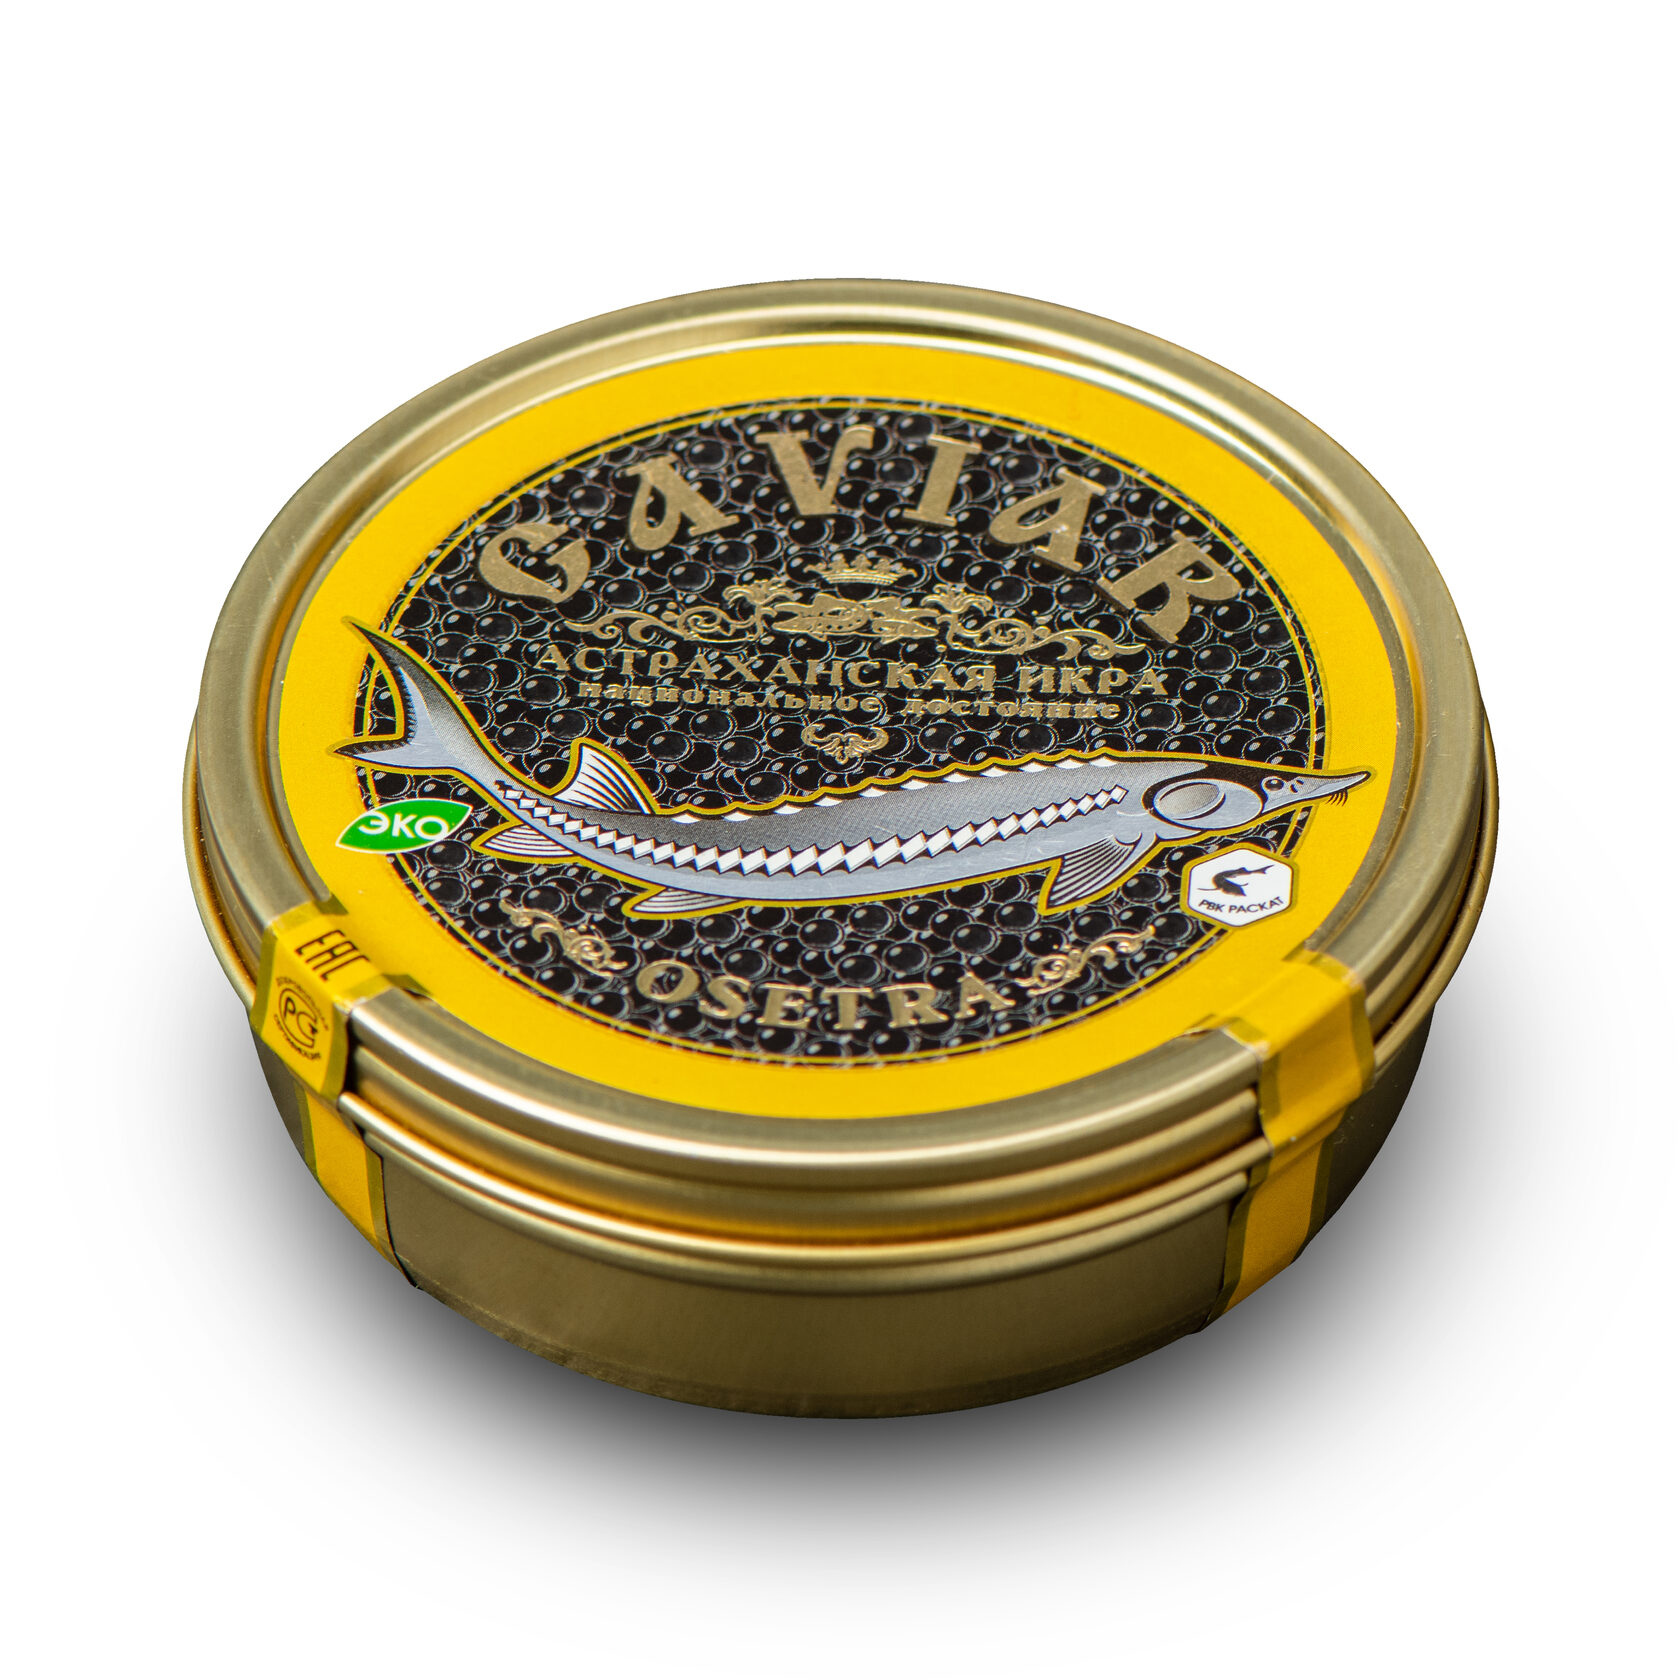 Trứng Cá Tầm Caviar Osetra 250g